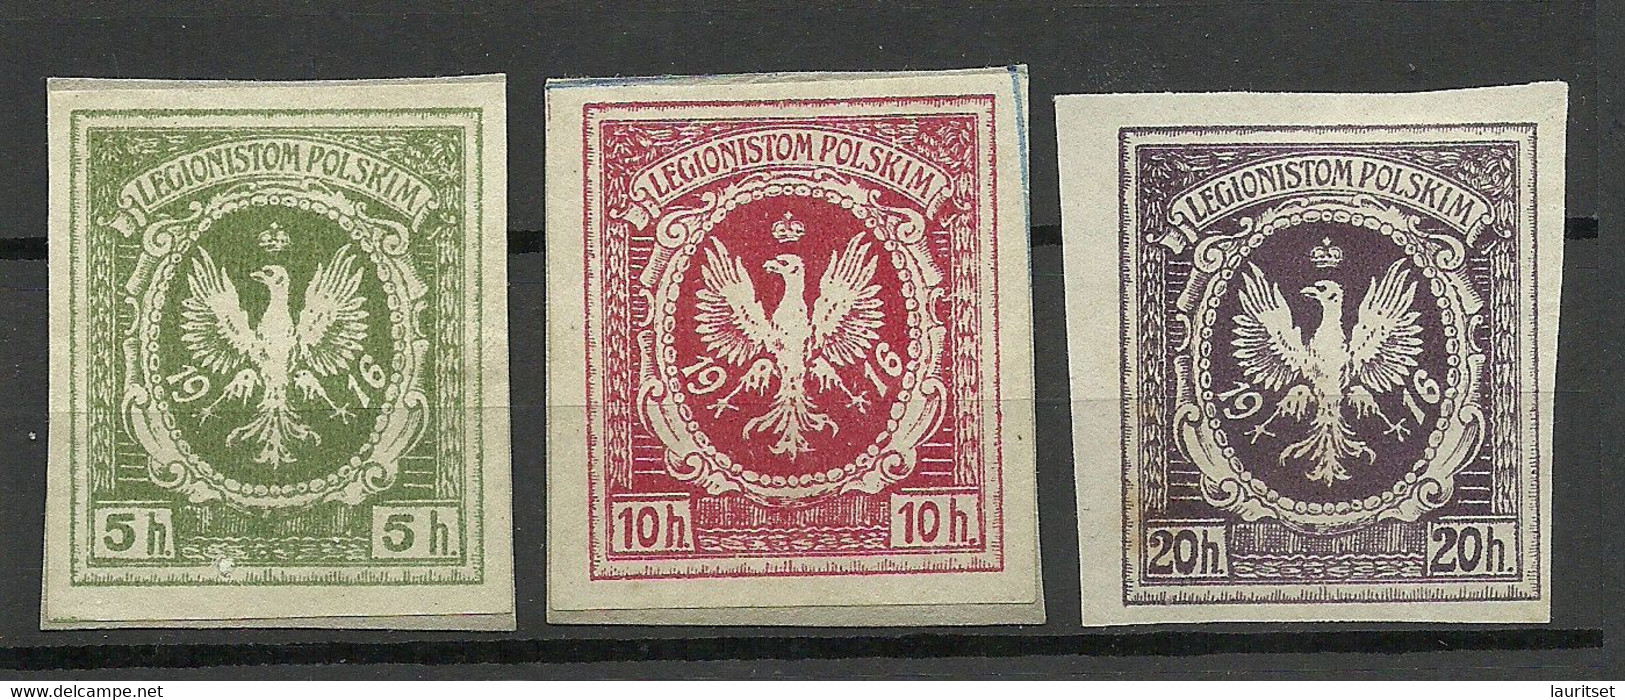 POLEN Poland 1916 Legionistam Polskim Für Polnische Legionäre Legion, 3 Stamps (*) - Neufs